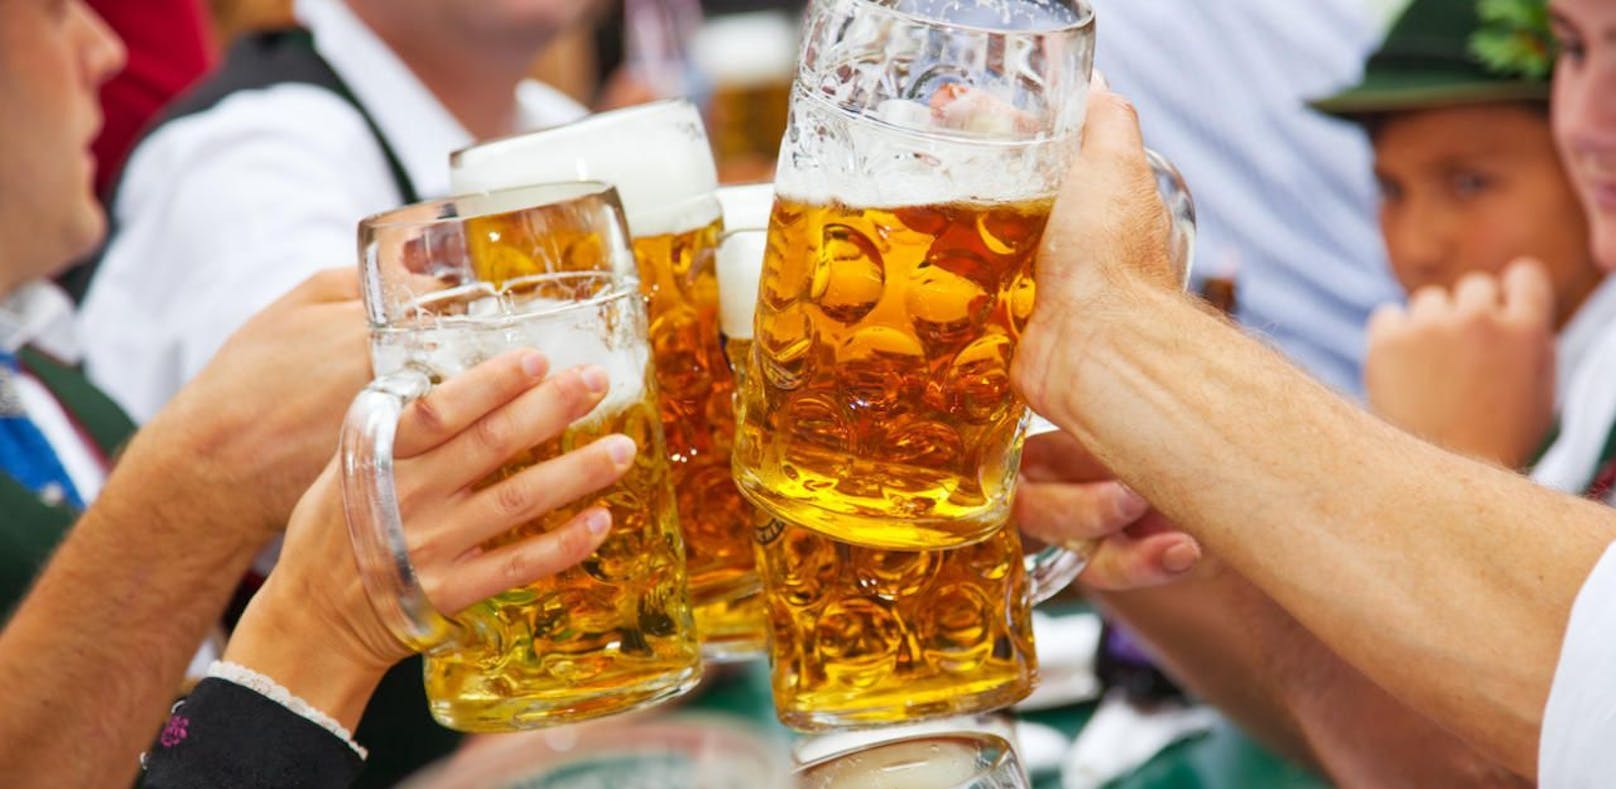 Steckt Nordeuropa in einer Bierkrise?